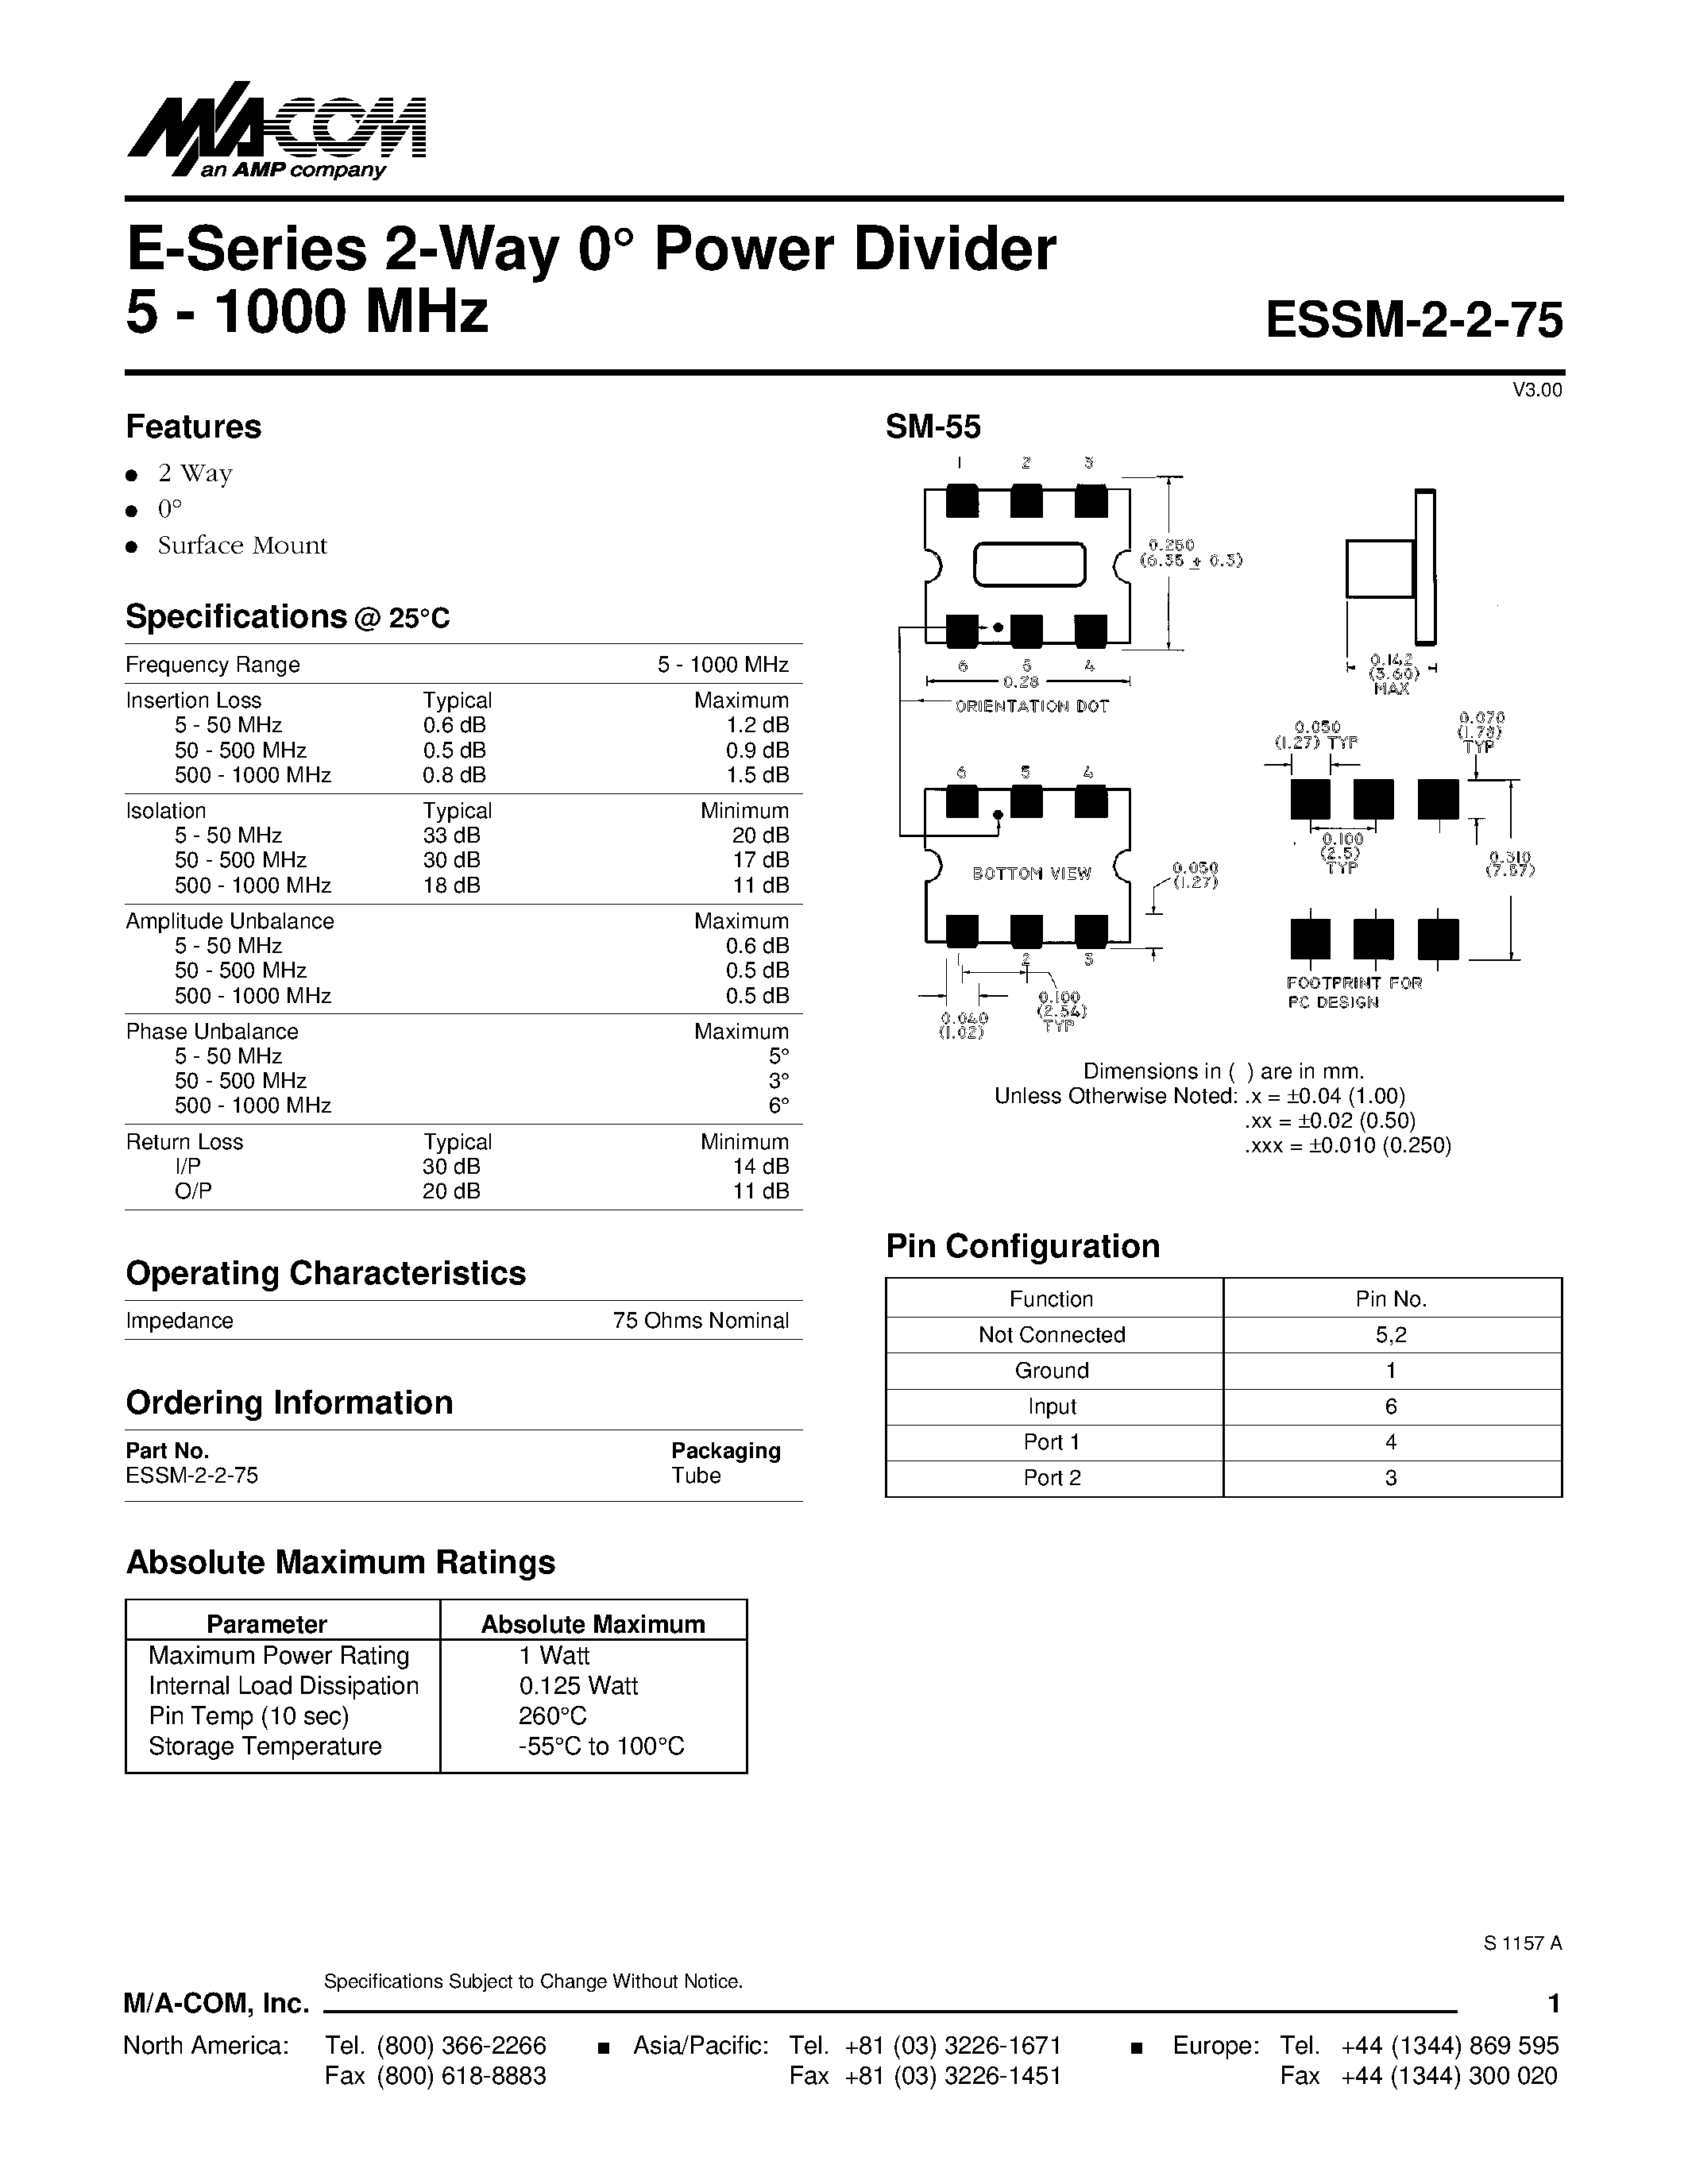 Datasheet ESSM-2-2-75 - E-Series 2-Way 0 Power Divider 5 - 1000 MHz page 1